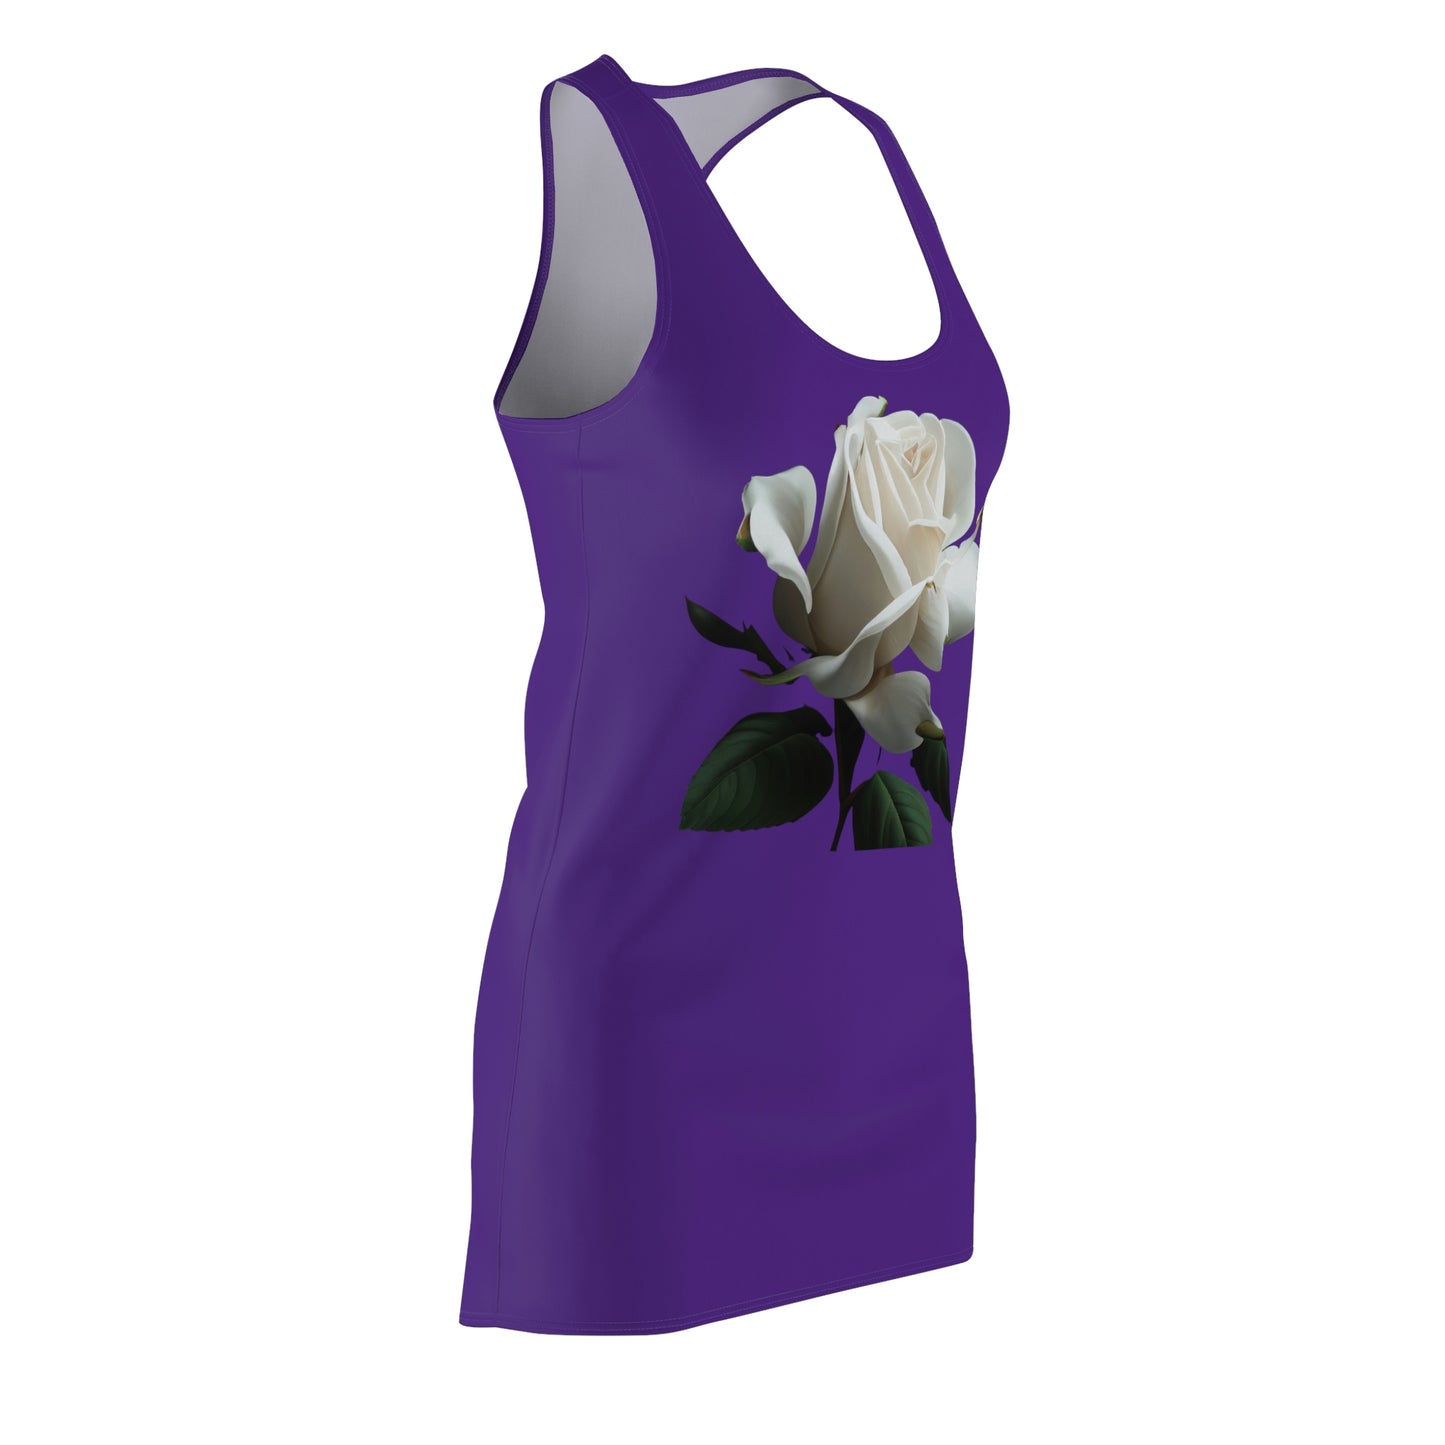 White Rose on Purple - Women's Cut & Sew Racerback Dress